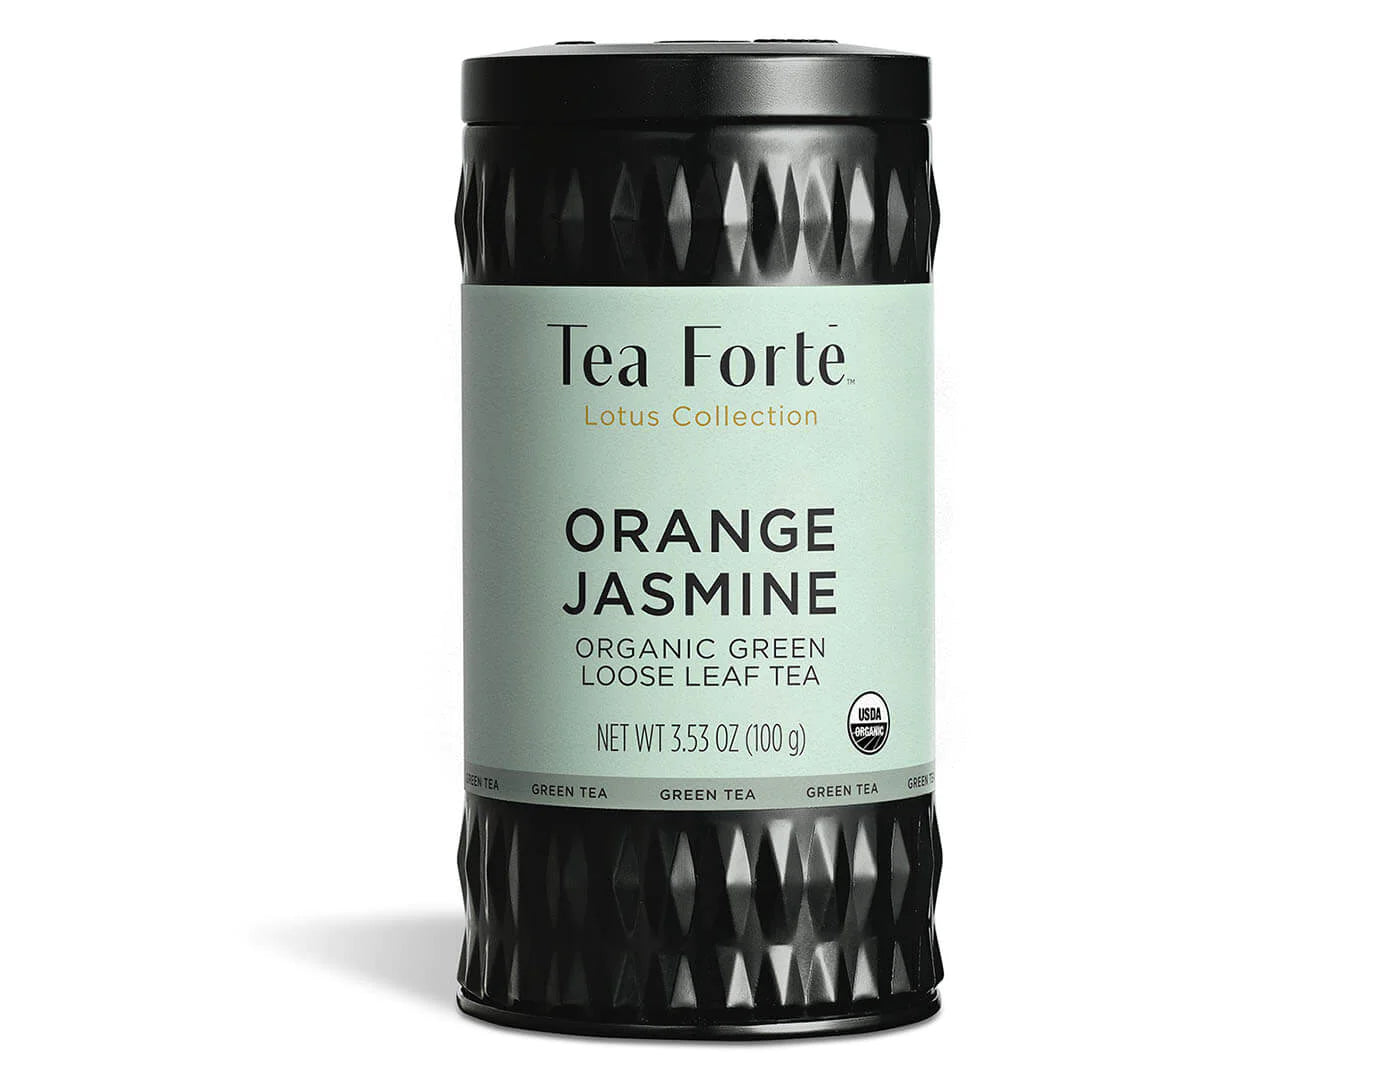 TEA FORTE LOOSE LEAF TEA CANISTERS ORANGE JASMINE TEA